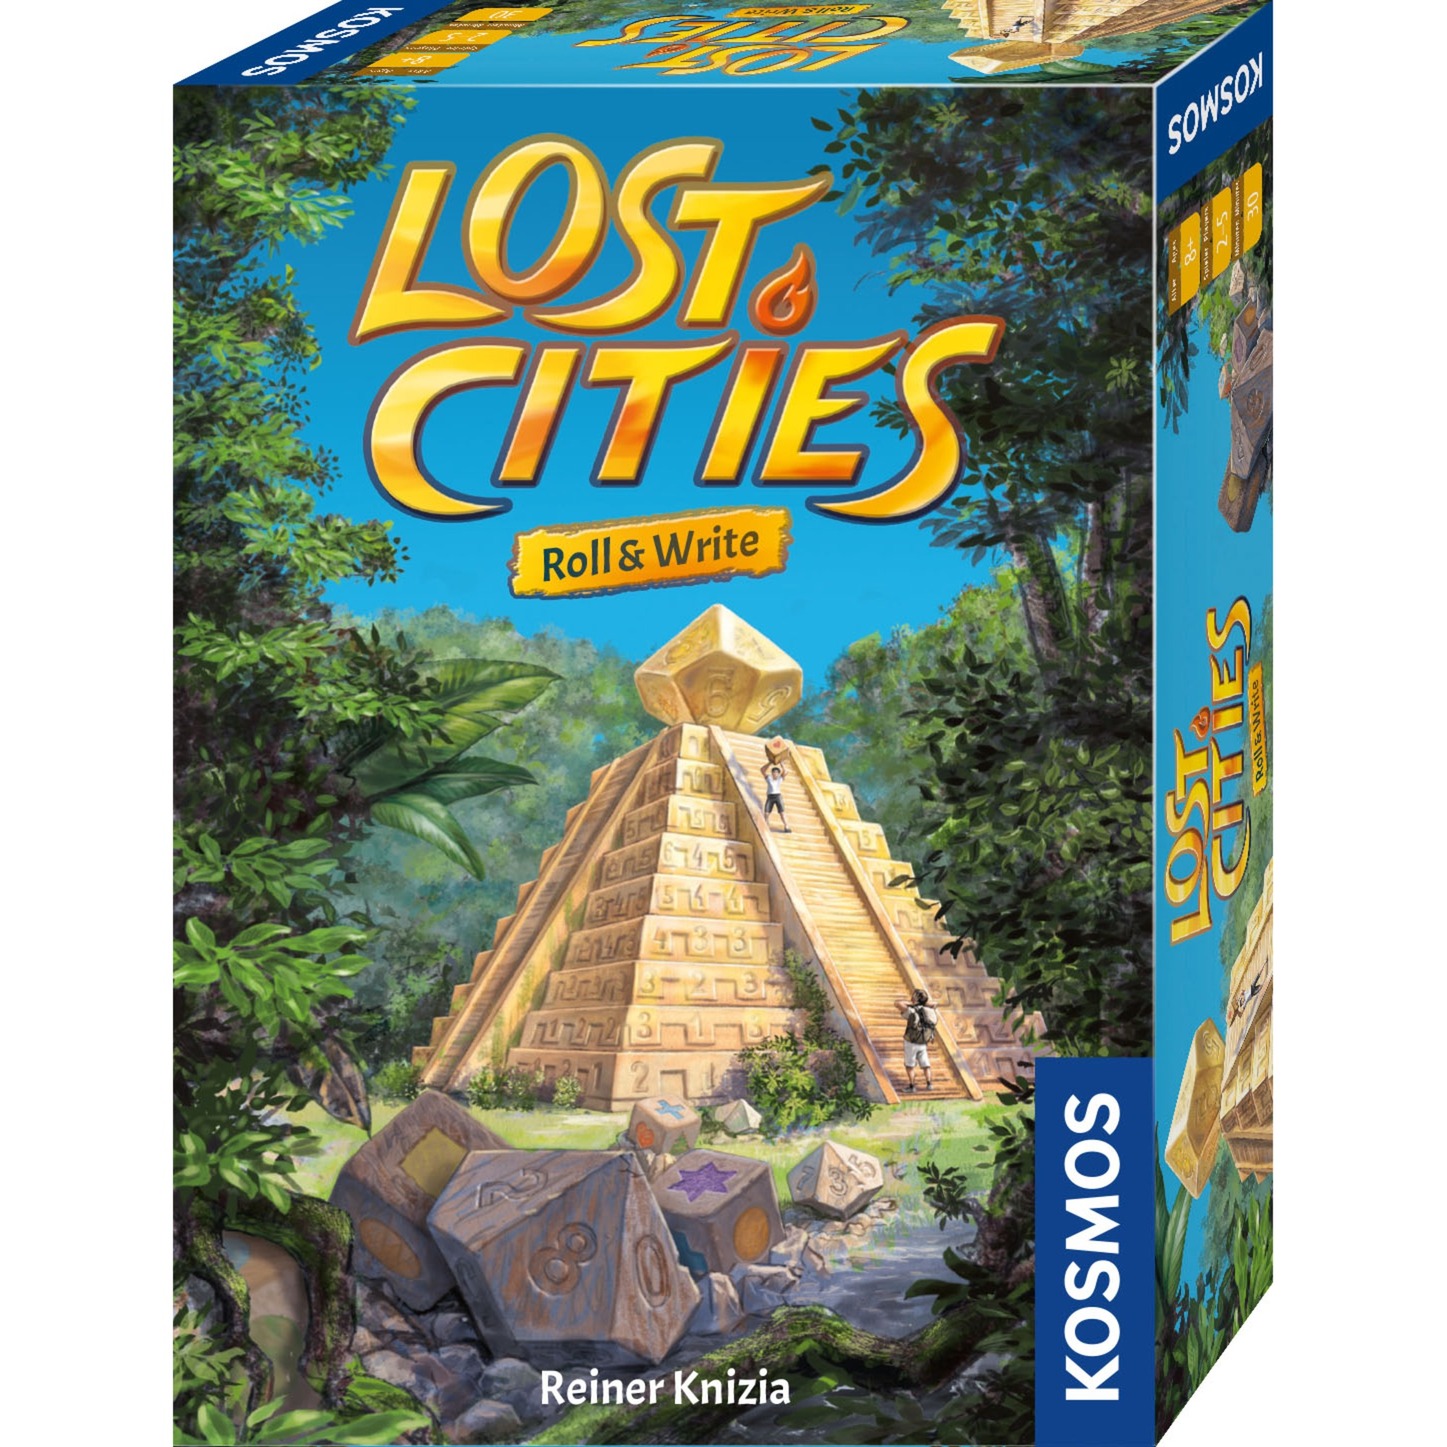 Image of Alternate - Lost Cities - Roll & Write, Würfelspiel online einkaufen bei Alternate